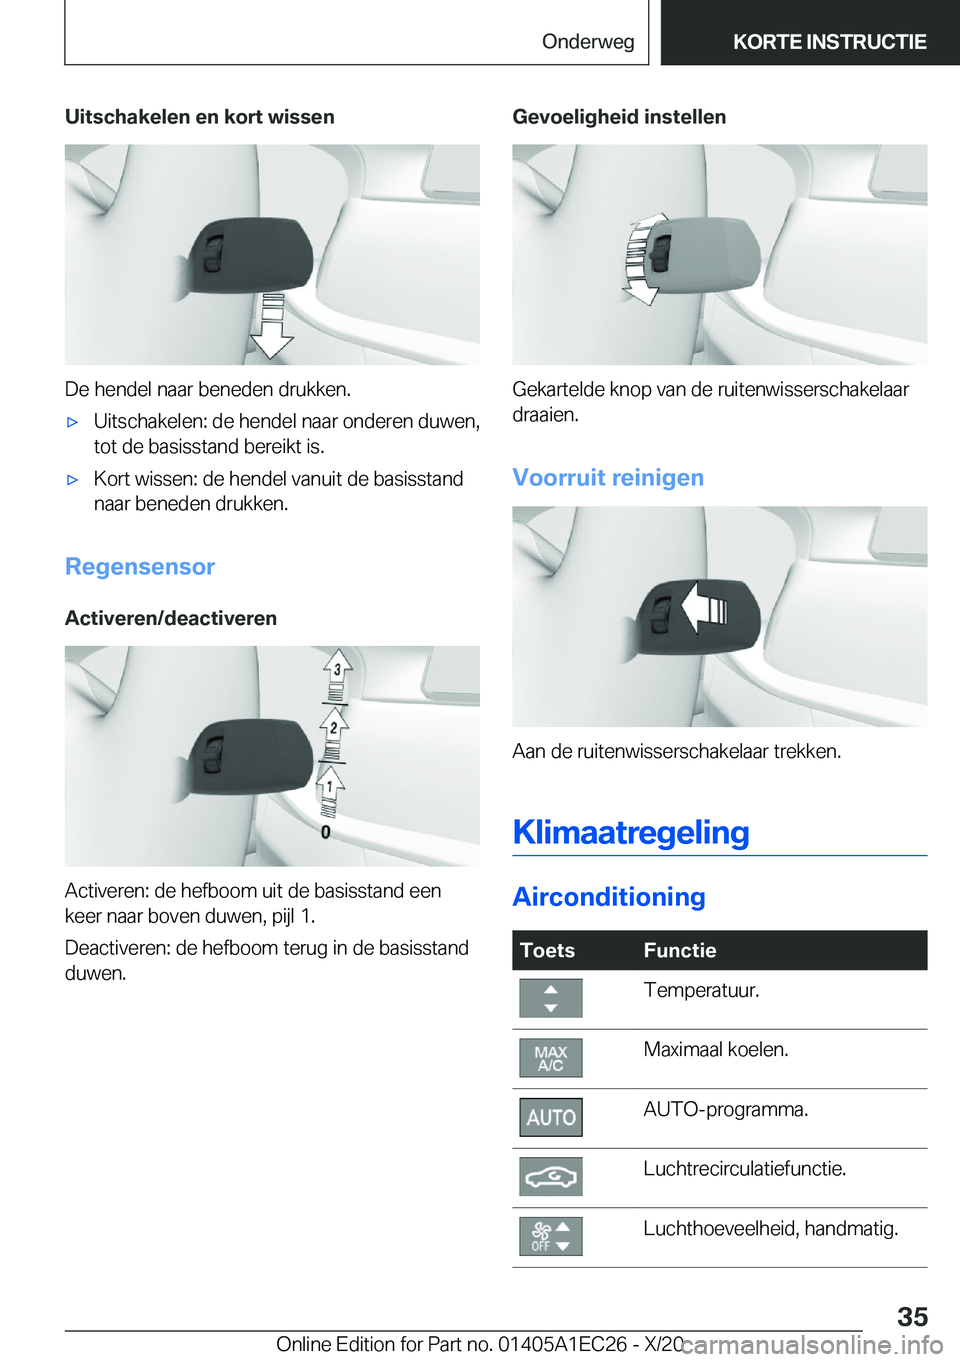 BMW 8 SERIES GRAN COUPE 2021  Instructieboekjes (in Dutch) �U�i�t�s�c�h�a�k�e�l�e�n��e�n��k�o�r�t��w�i�s�s�e�n
�D�e��h�e�n�d�e�l��n�a�a�r��b�e�n�e�d�e�n��d�r�u�k�k�e�n�.
'x�U�i�t�s�c�h�a�k�e�l�e�n�:��d�e��h�e�n�d�e�l��n�a�a�r��o�n�d�e�r�e�n��d